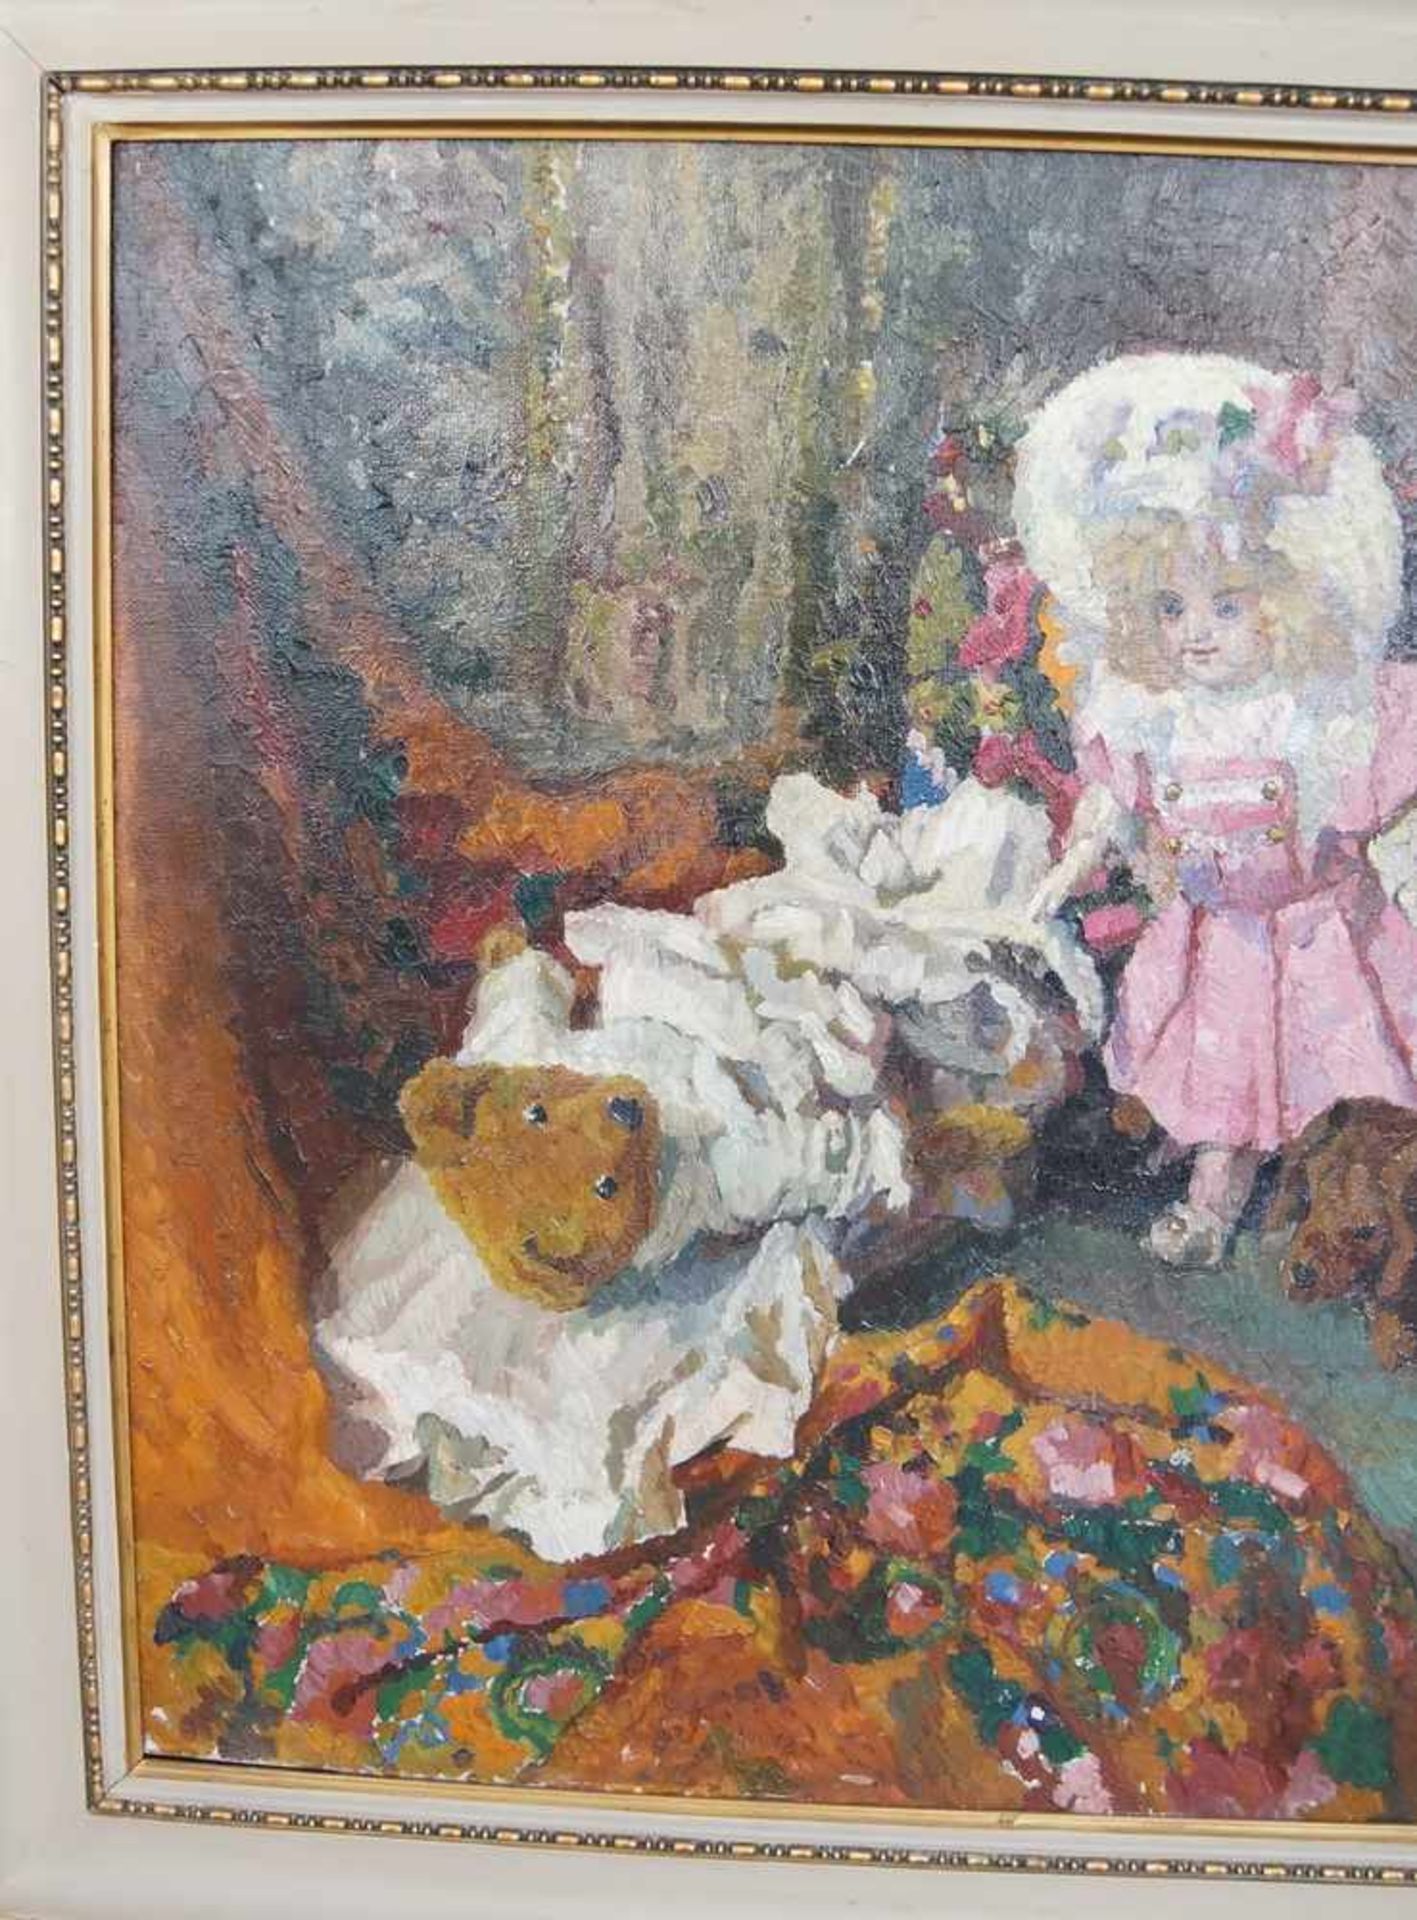 Liebliches Gemälde in Öl auf Leinwand, gerahmt, Kind mit Teddybär und Hund, 103x111cm - Bild 3 aus 6